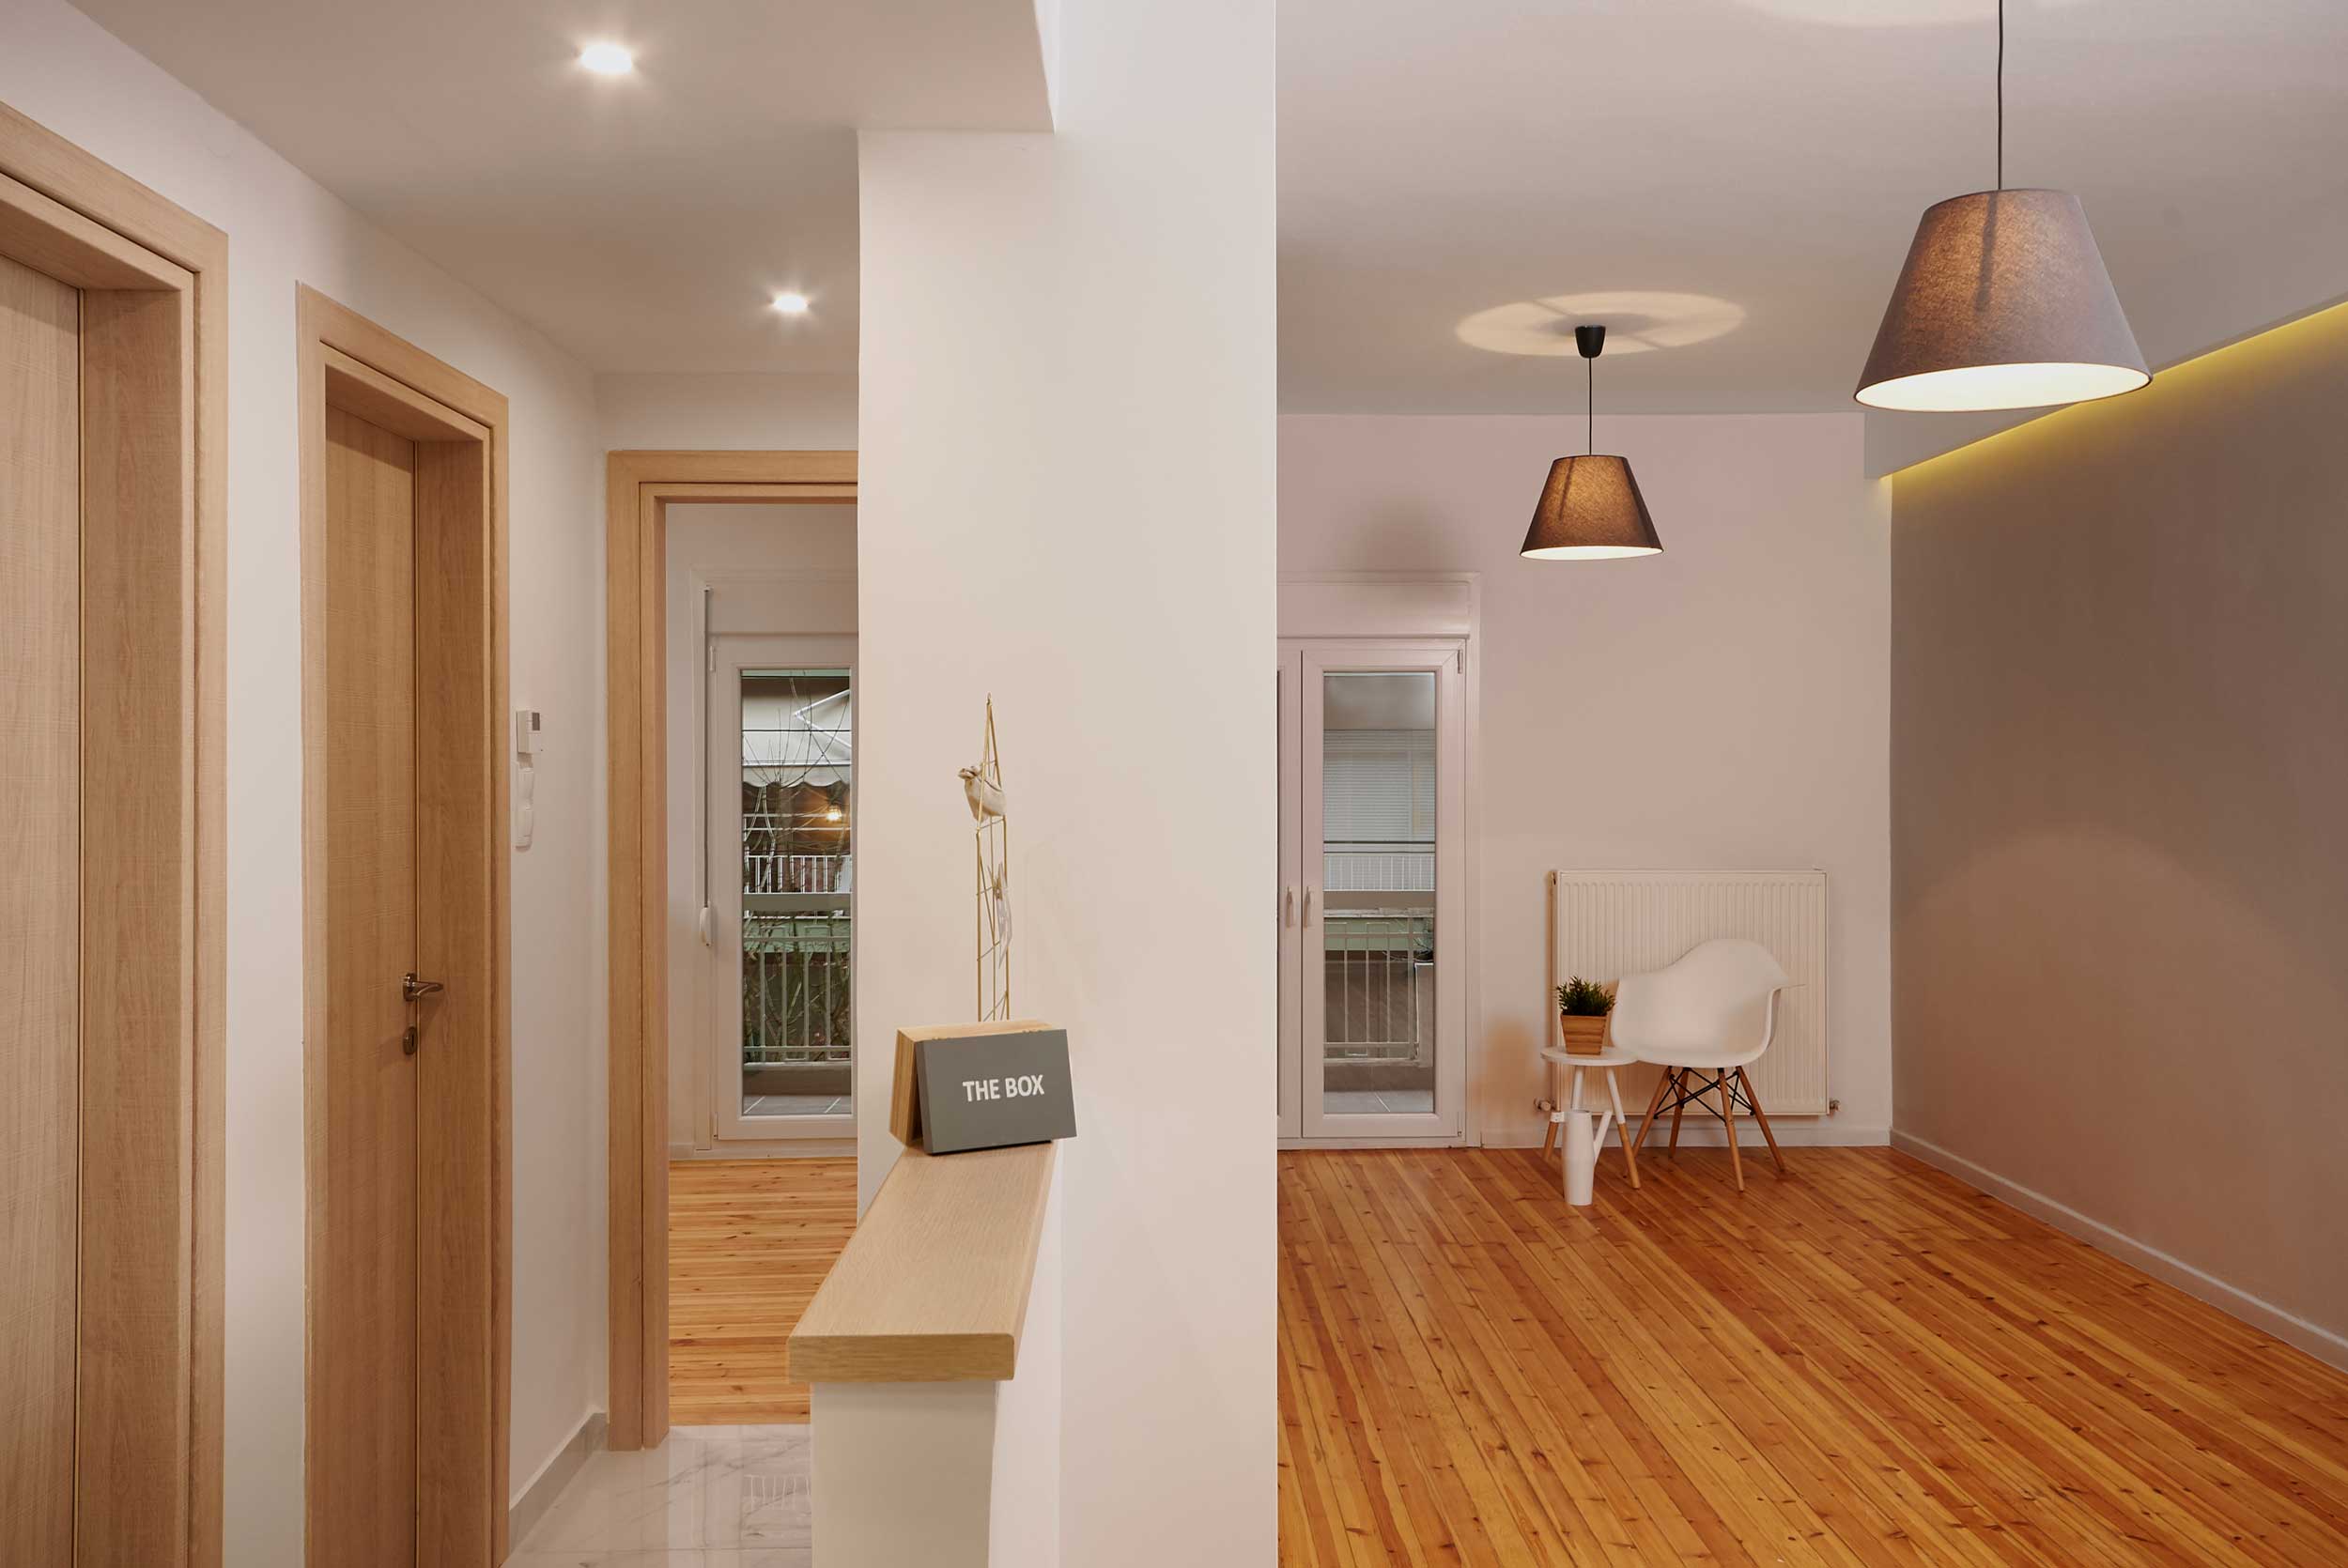 Apartment renovation | 68 sq.m. | Ntepo